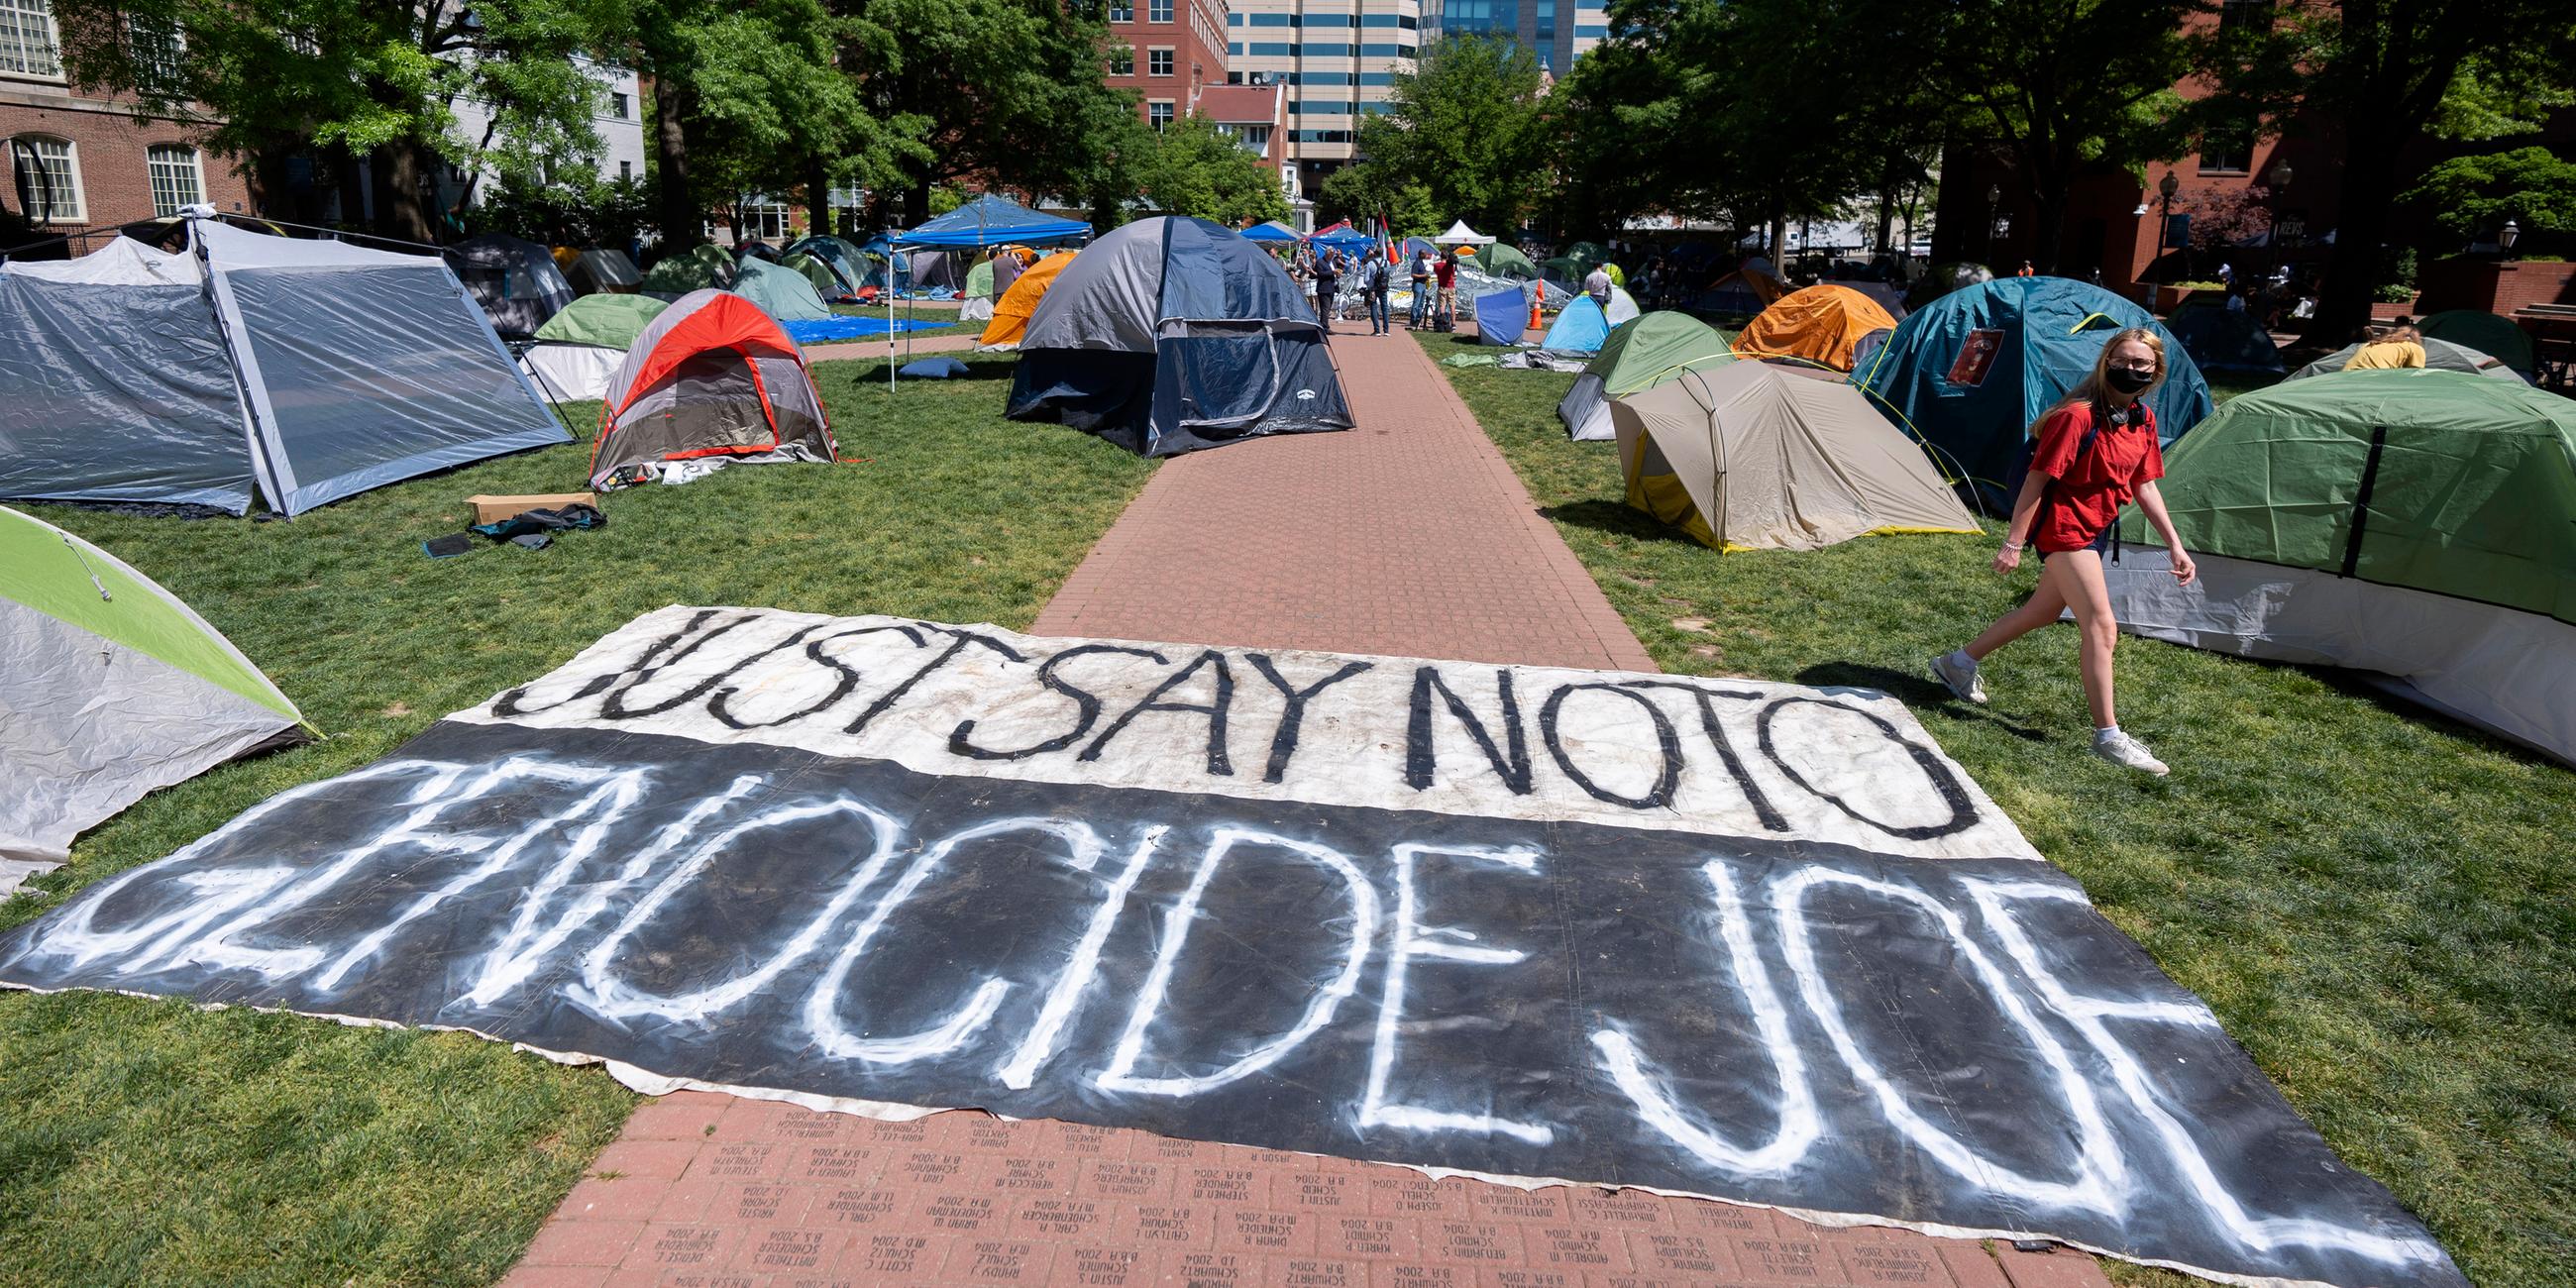 Im Innenhof einer Uni stehen mehrere Zelte auf einem Weg liegt ein Banner mit der Aufschrift "Sag Nein zu Völkermord Joe"